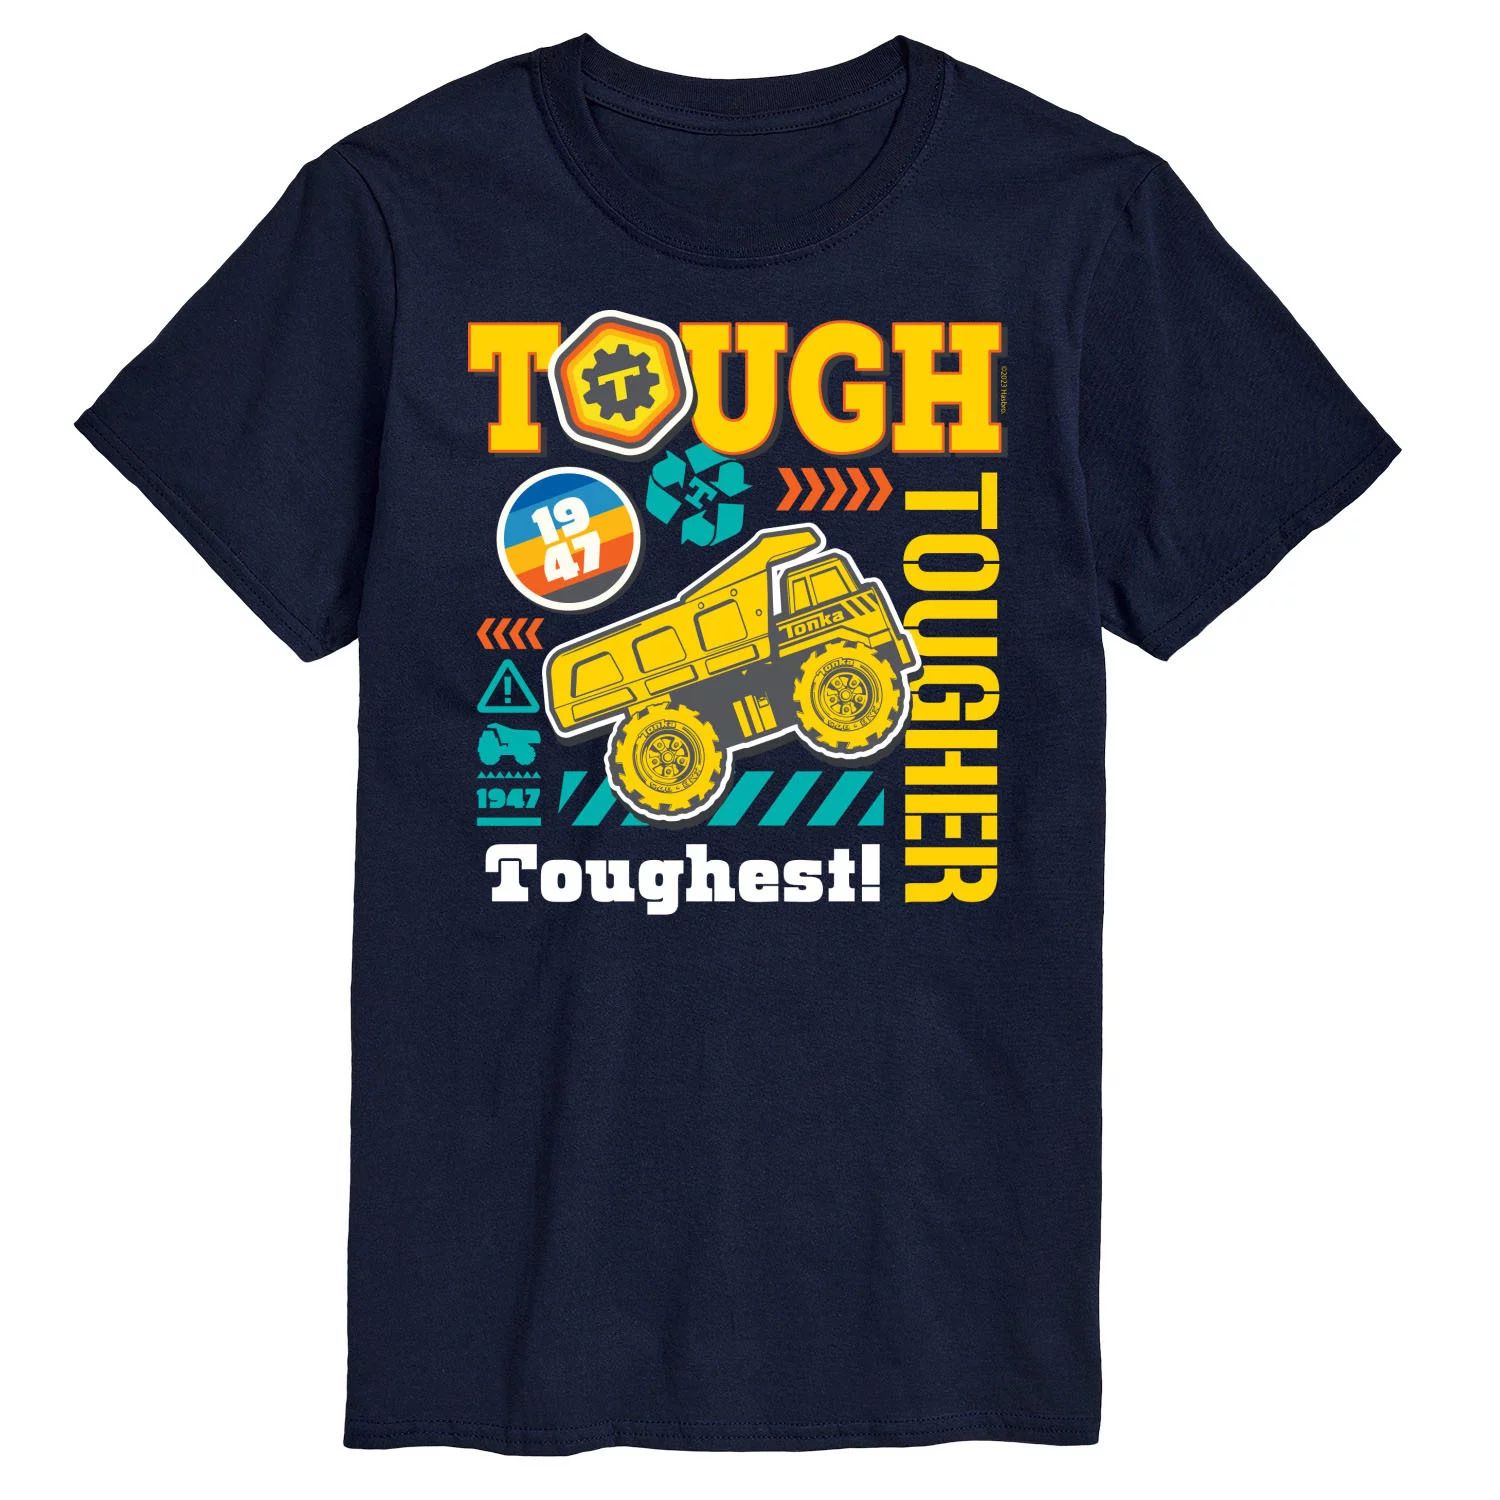 Футболка Big & Tall Tough Tougher Toughest с цветным рисунком Tonka, синий